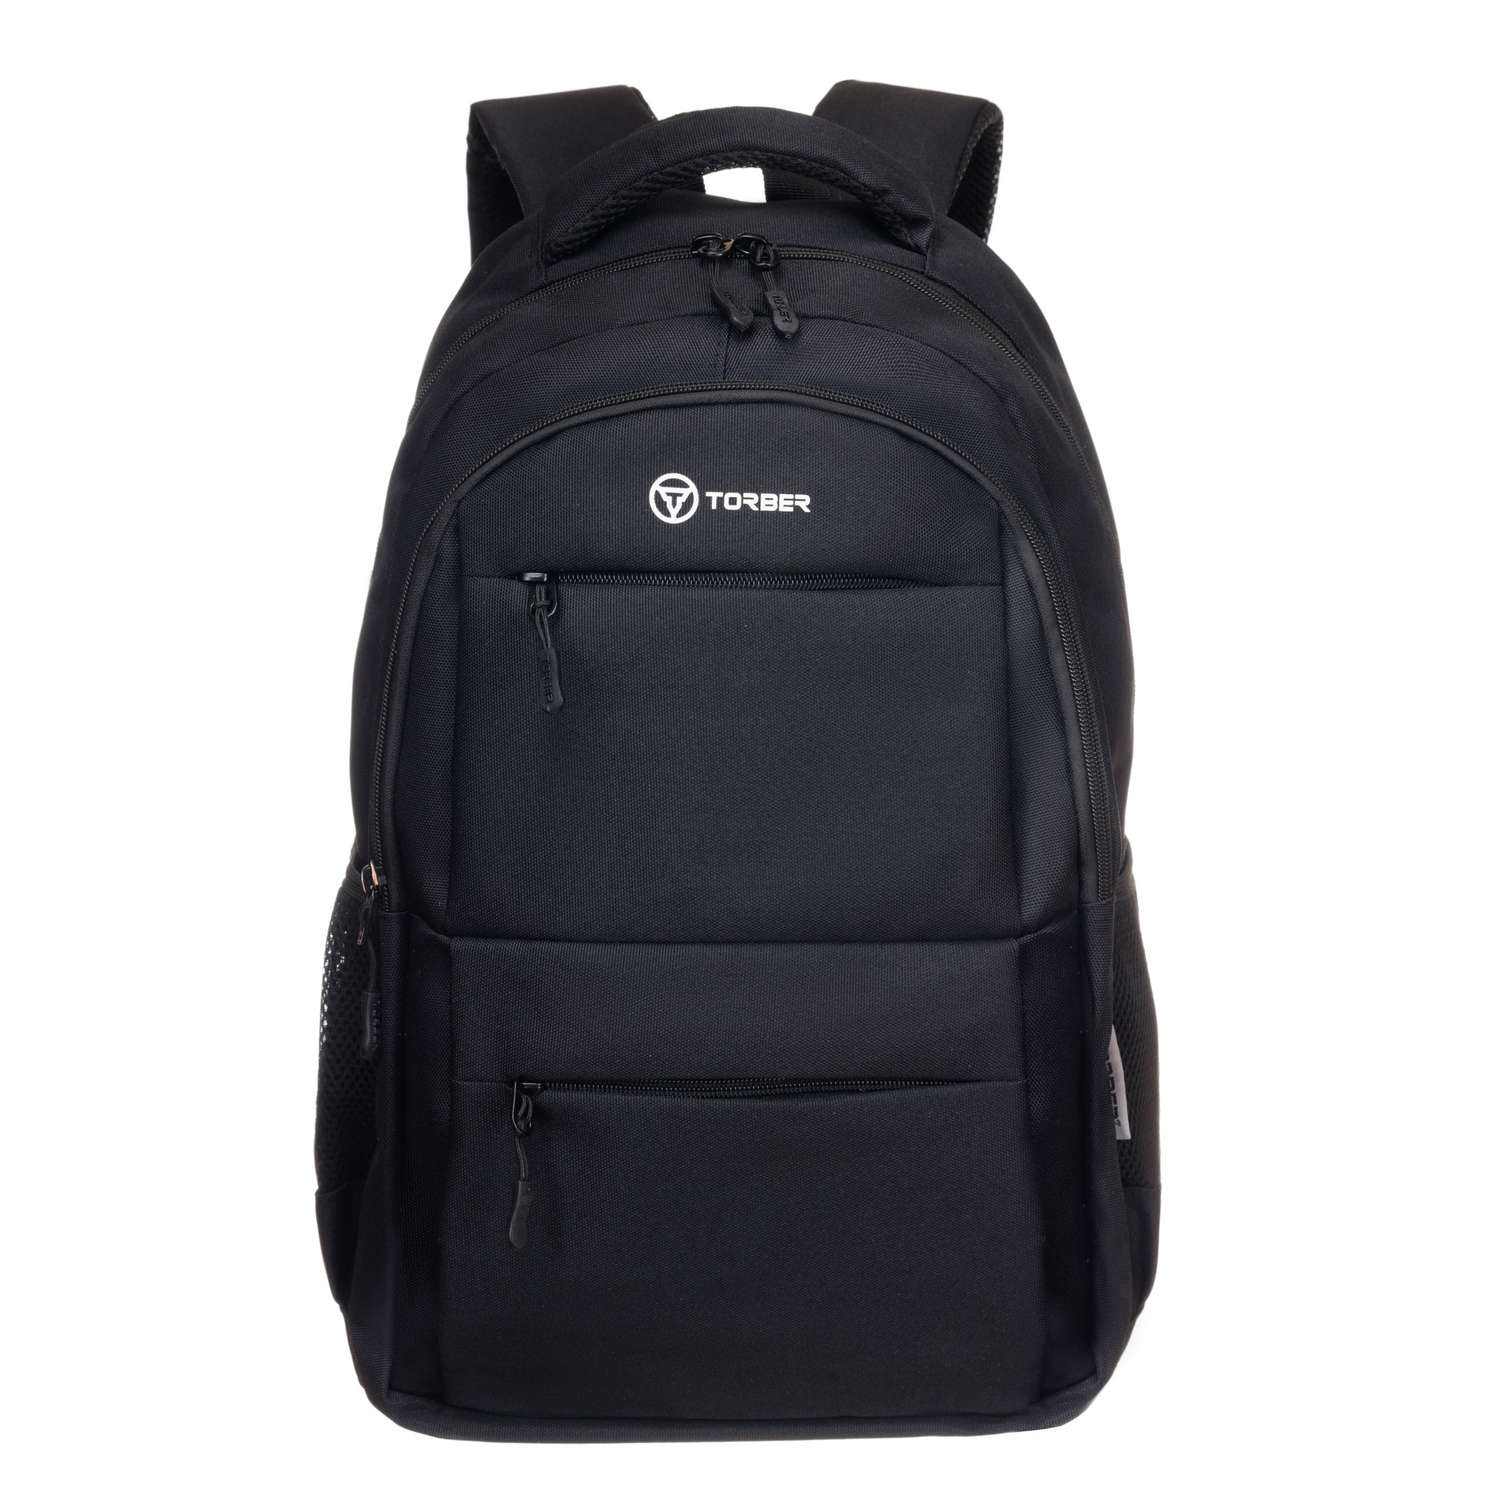 Рюкзак TORBER CLASS X черный и мешок для сменной обуви - фото 2